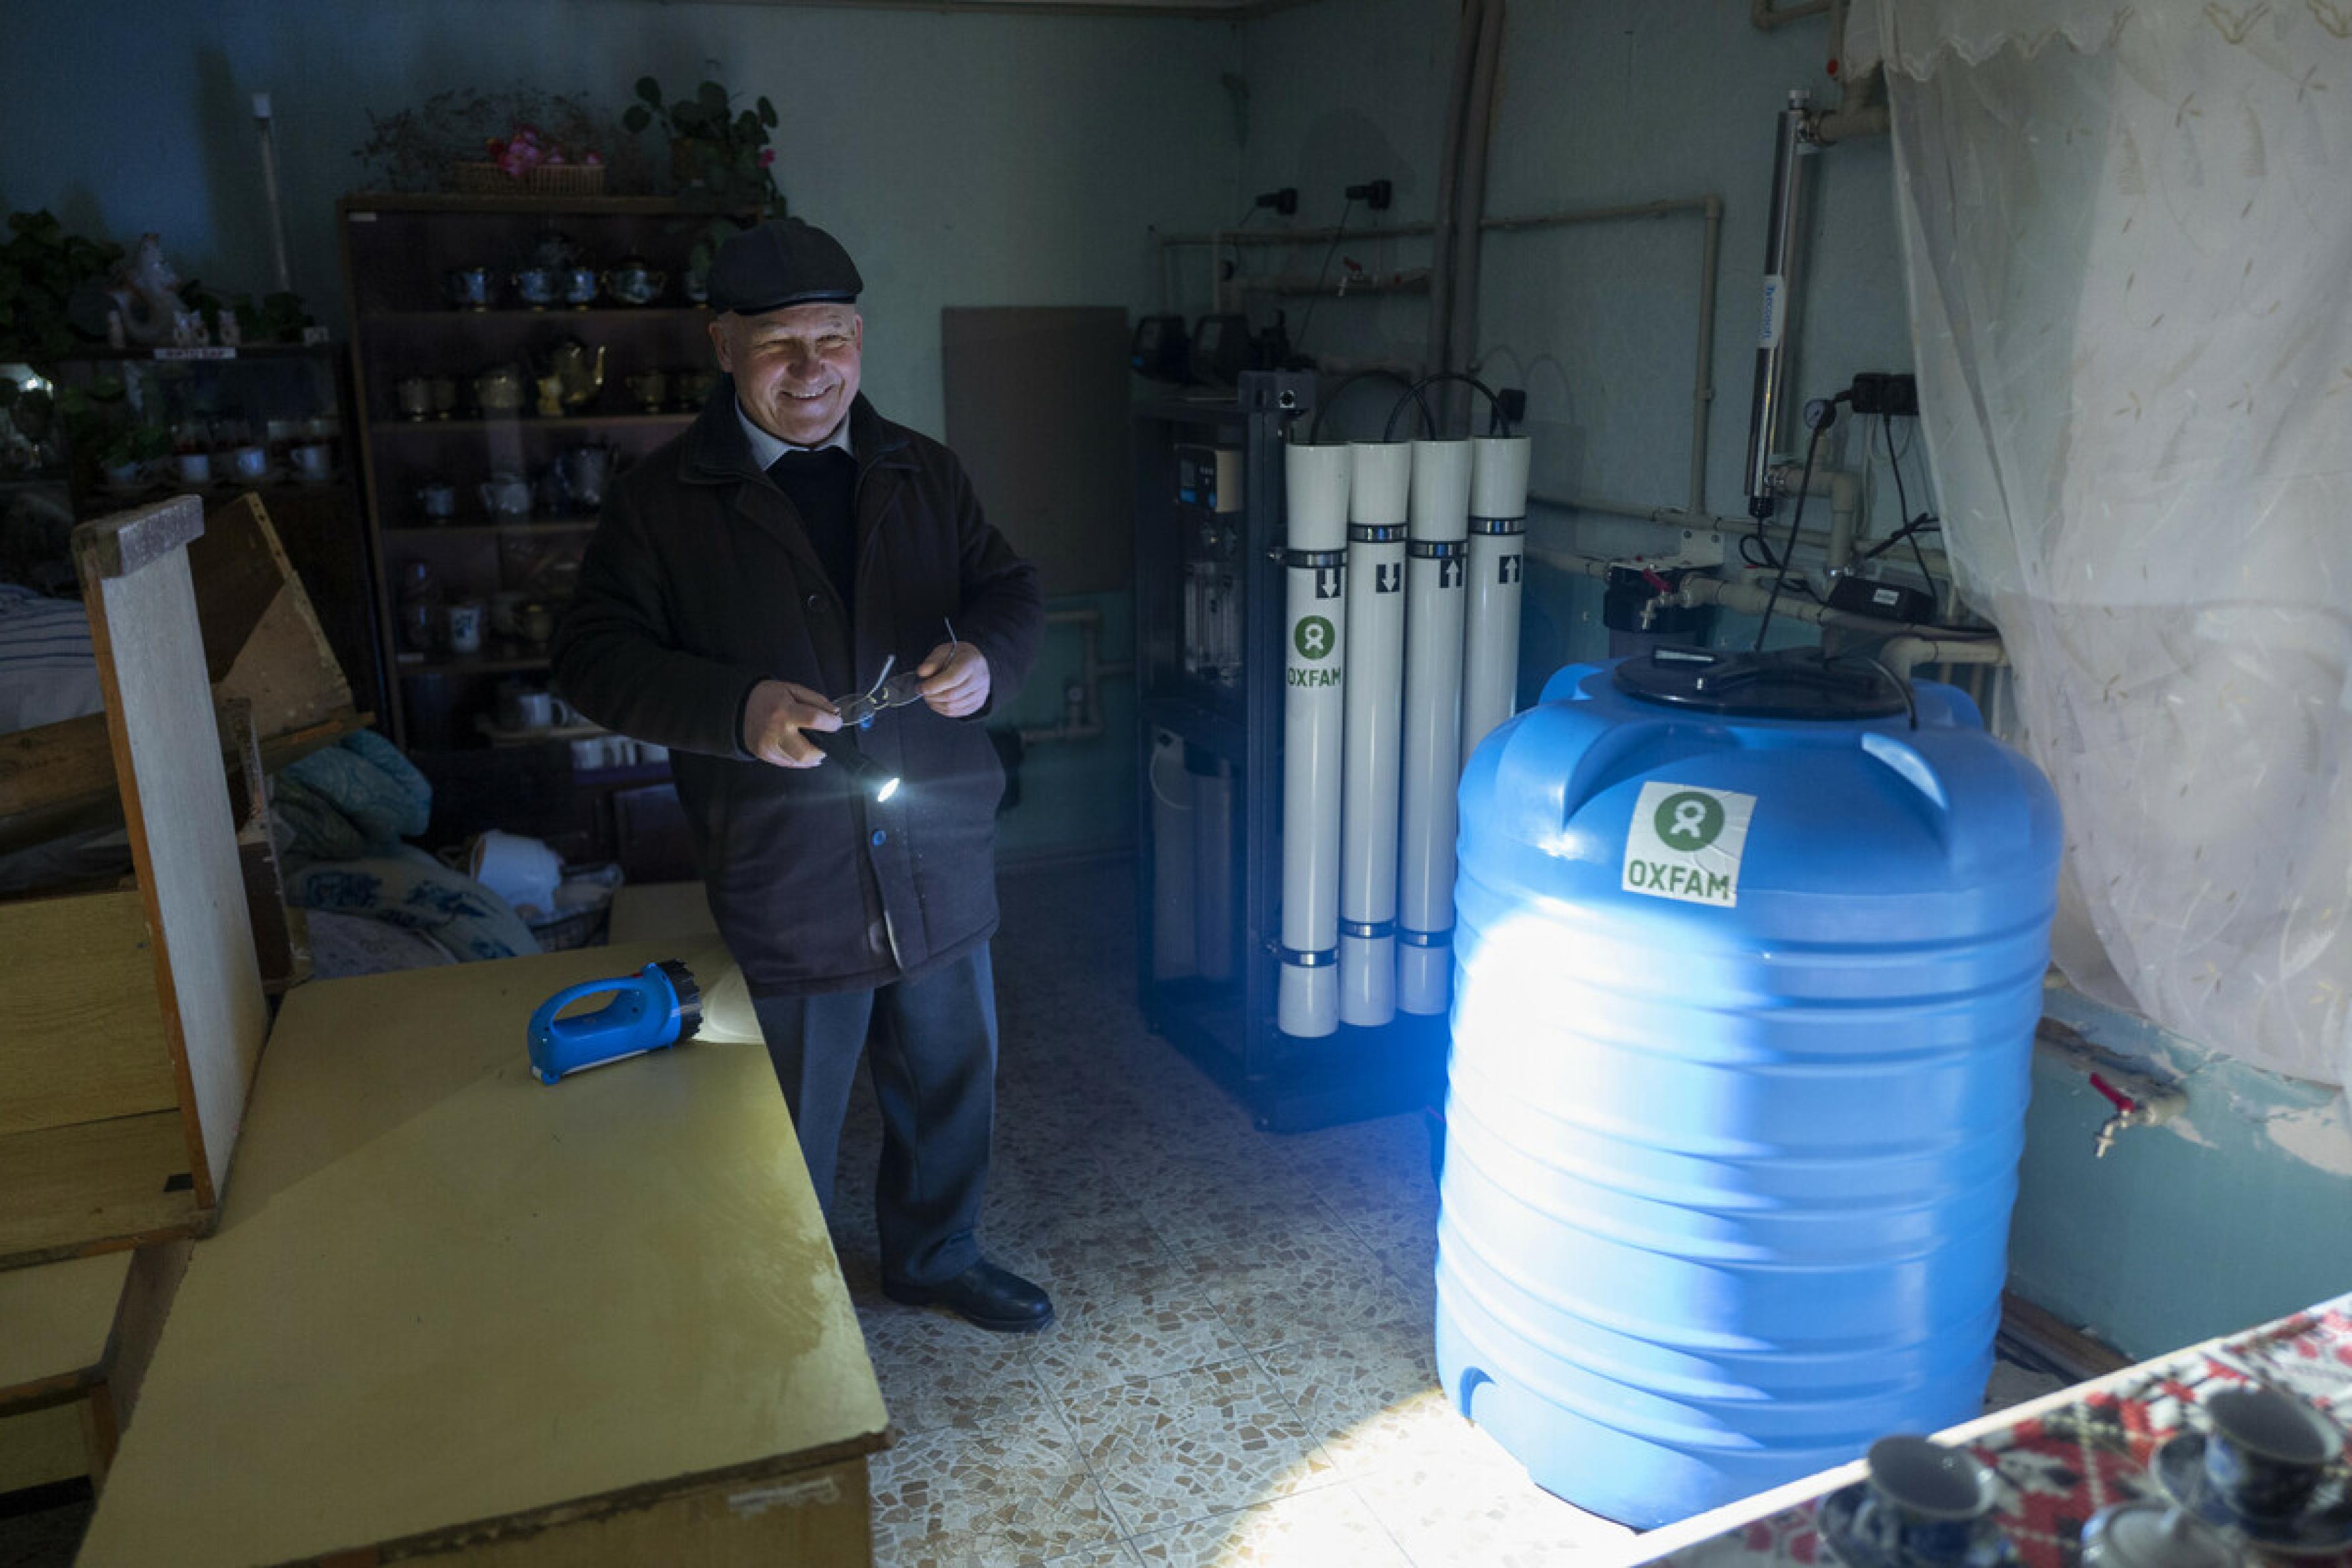 Volodymyr Yakovlev steht in einem dunklen Raum. mit einer Taschenlampe zeigt er eine Wasseraufbereitungsanlage auf der Oxfam steht. Er lacht zufrieden.